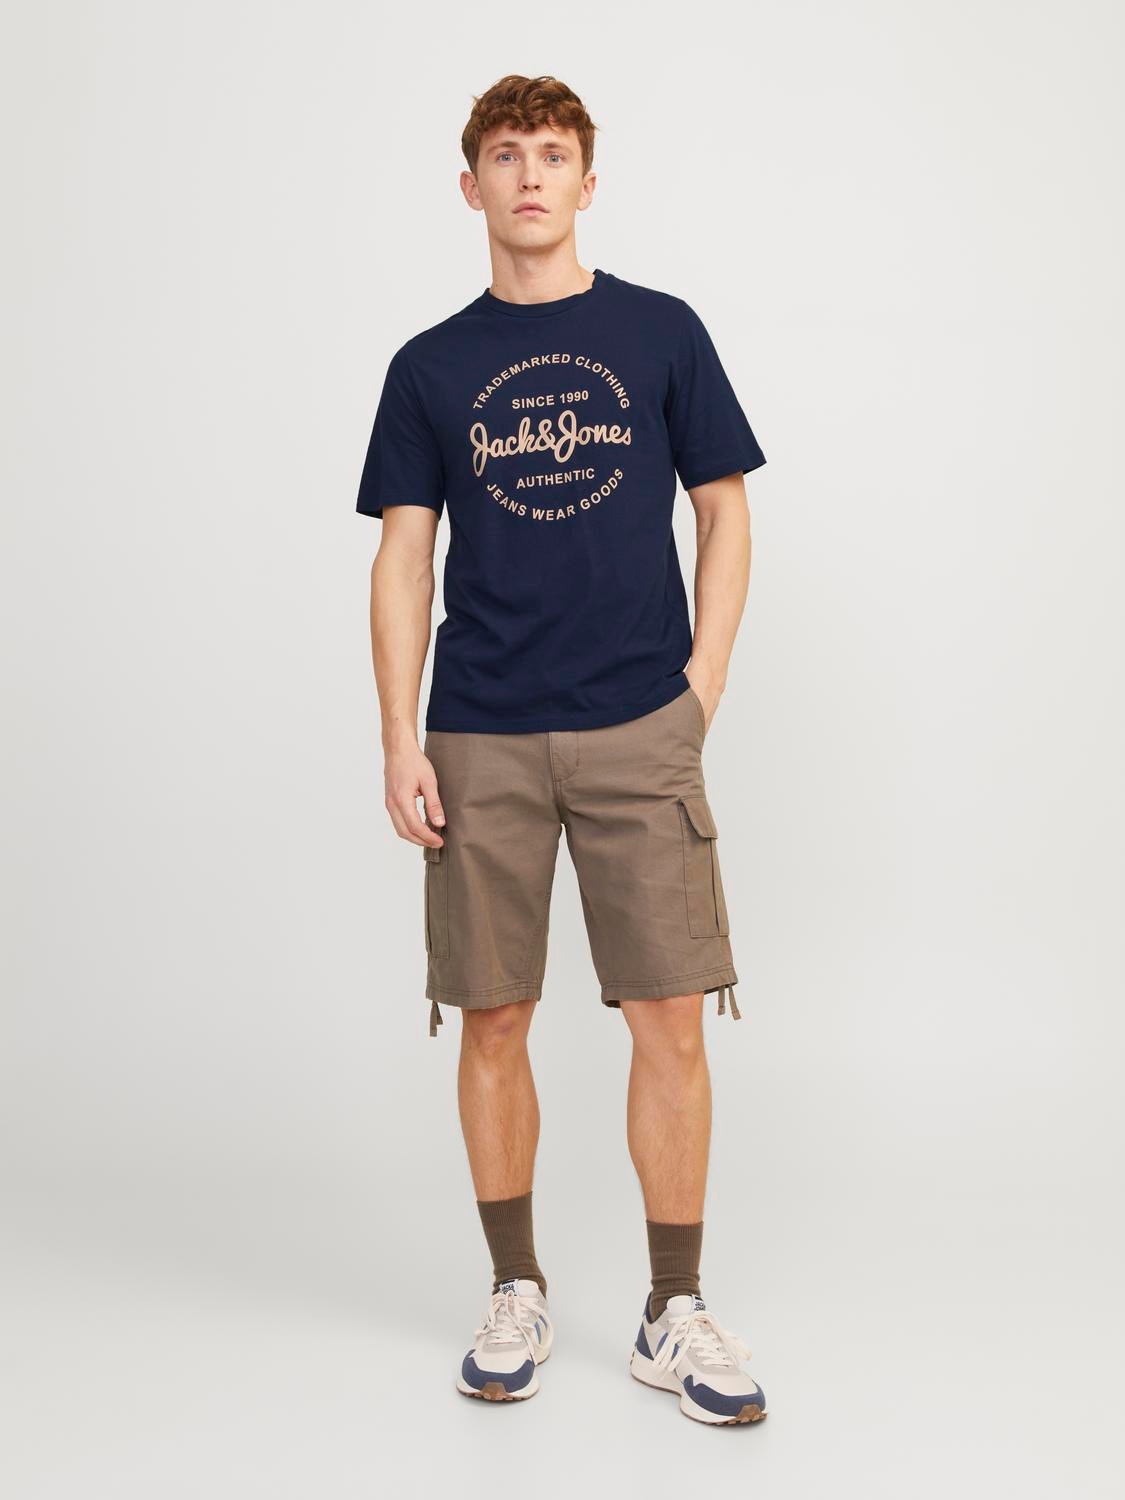 Jack & Jones Gedruckt Rundhals T-shirt -Navy Blazer - 12247972